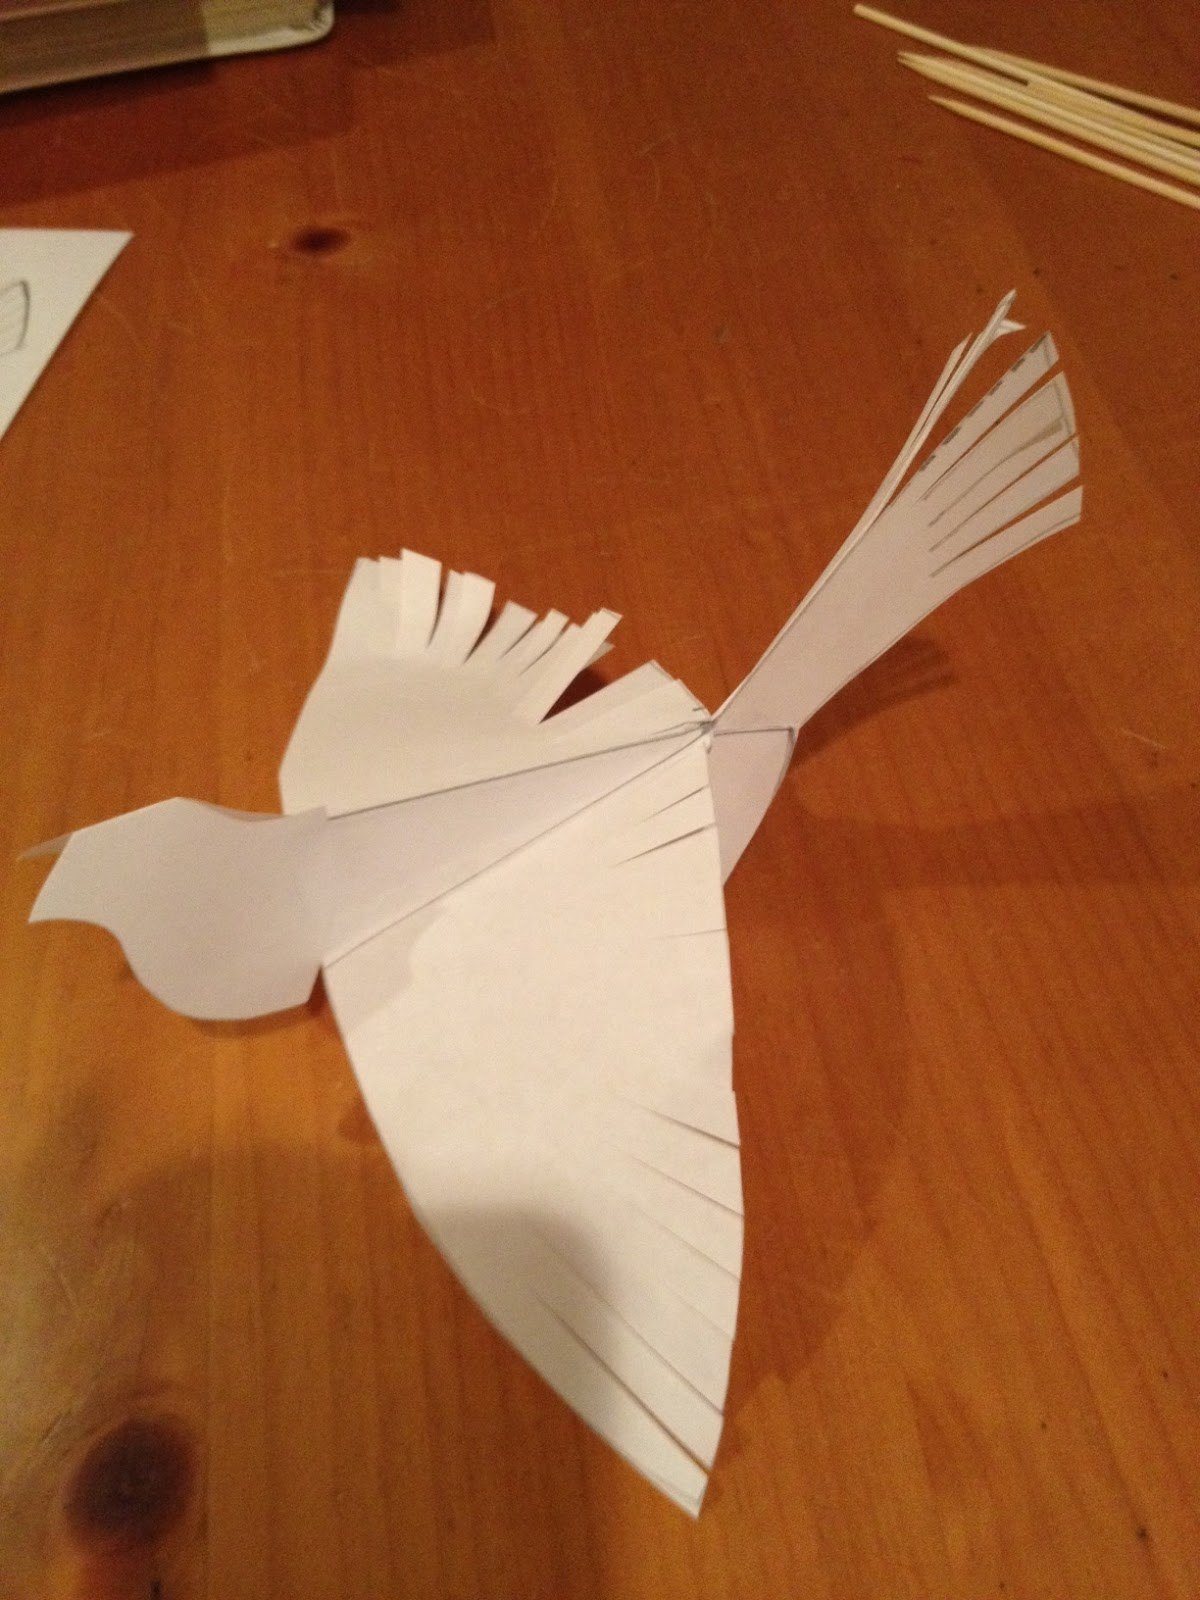 Сделать птичку из бумаги своими руками. Сделать птицу счастья из бумаги. Поделка птица счастья своими руками из бумаги. Сделать птичку из бумаги 2 класс. Как сделать птиц из бумаги своими руками поэтапно фото.